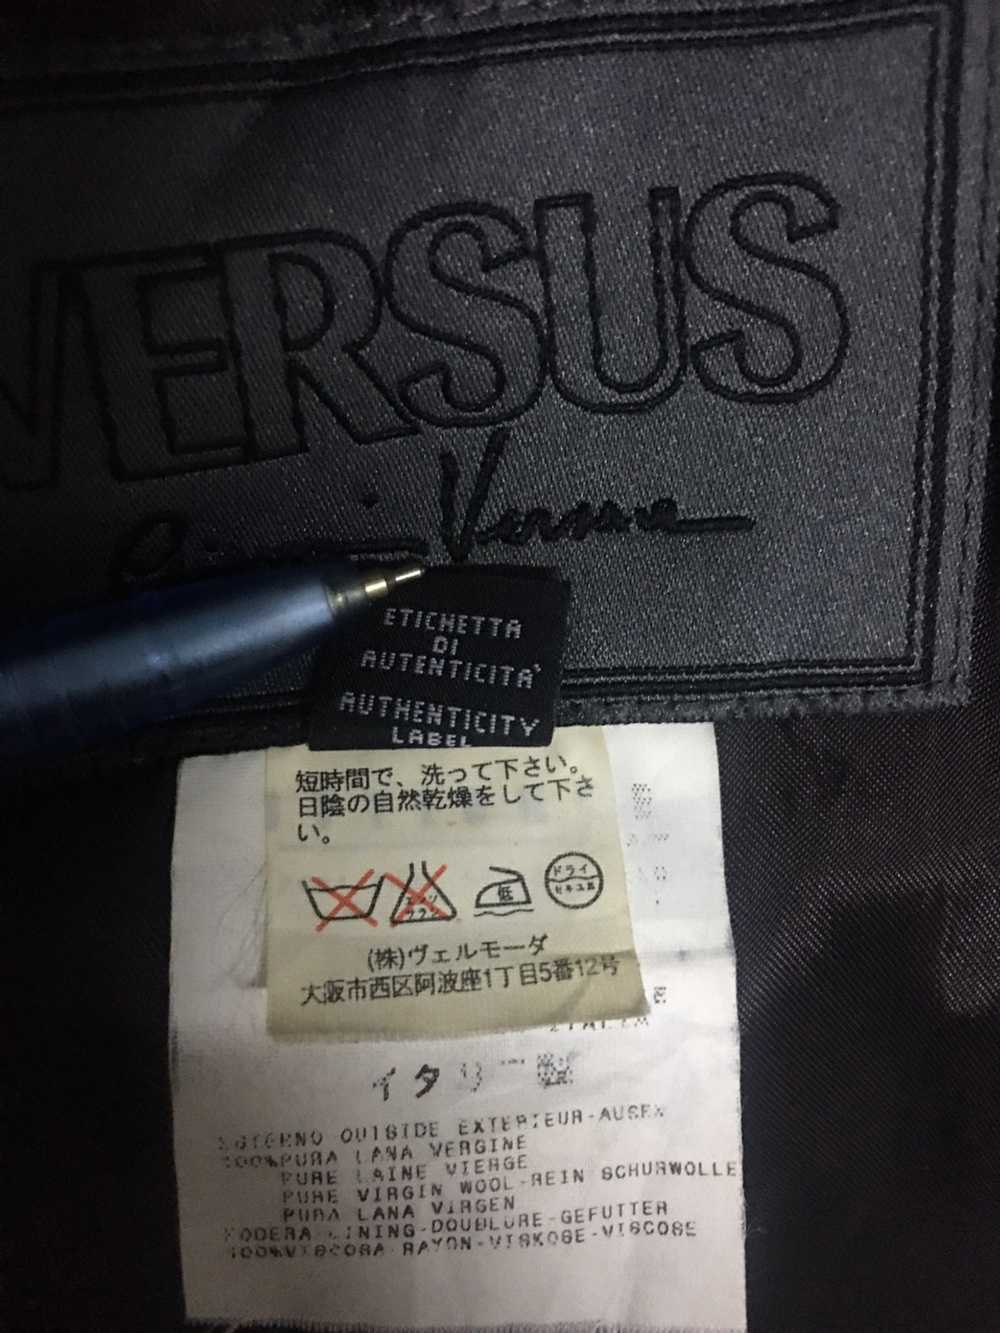 Versus Versace Versus Giani Versace Jacket - image 6